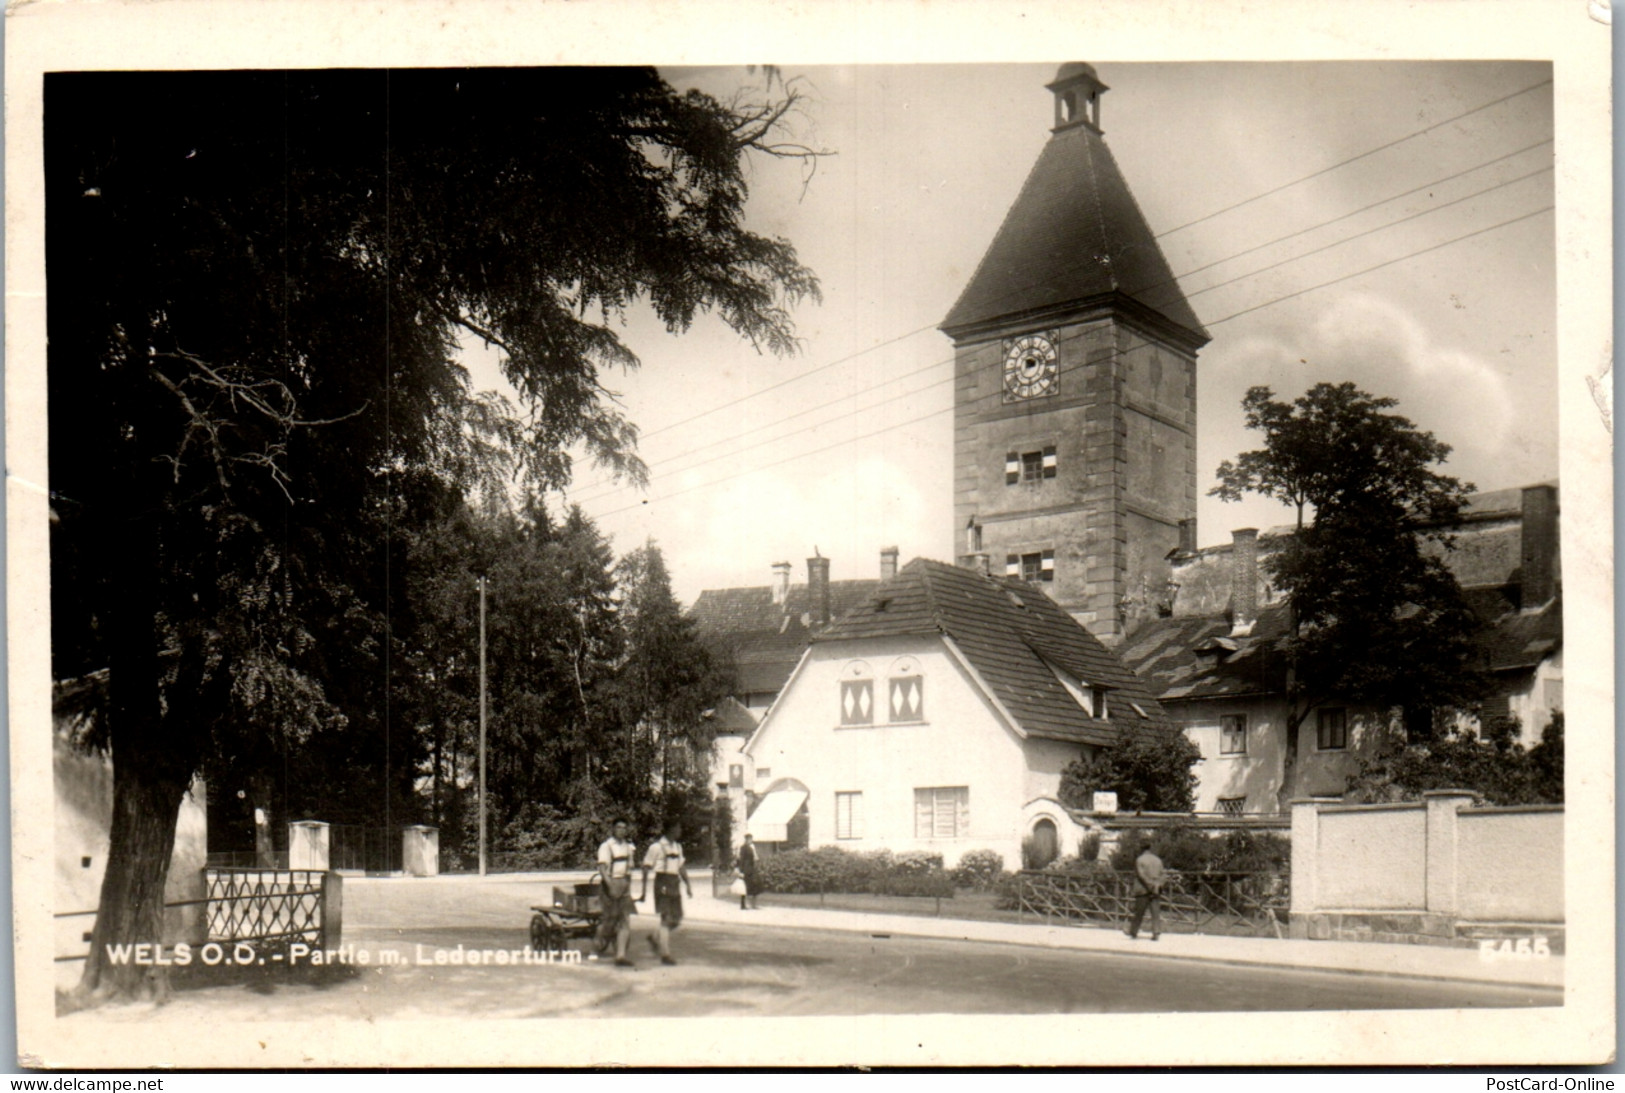 40193 - Oberösterreich - Wels , Partie M Ledererturm - Gelaufen 1941 - Wels